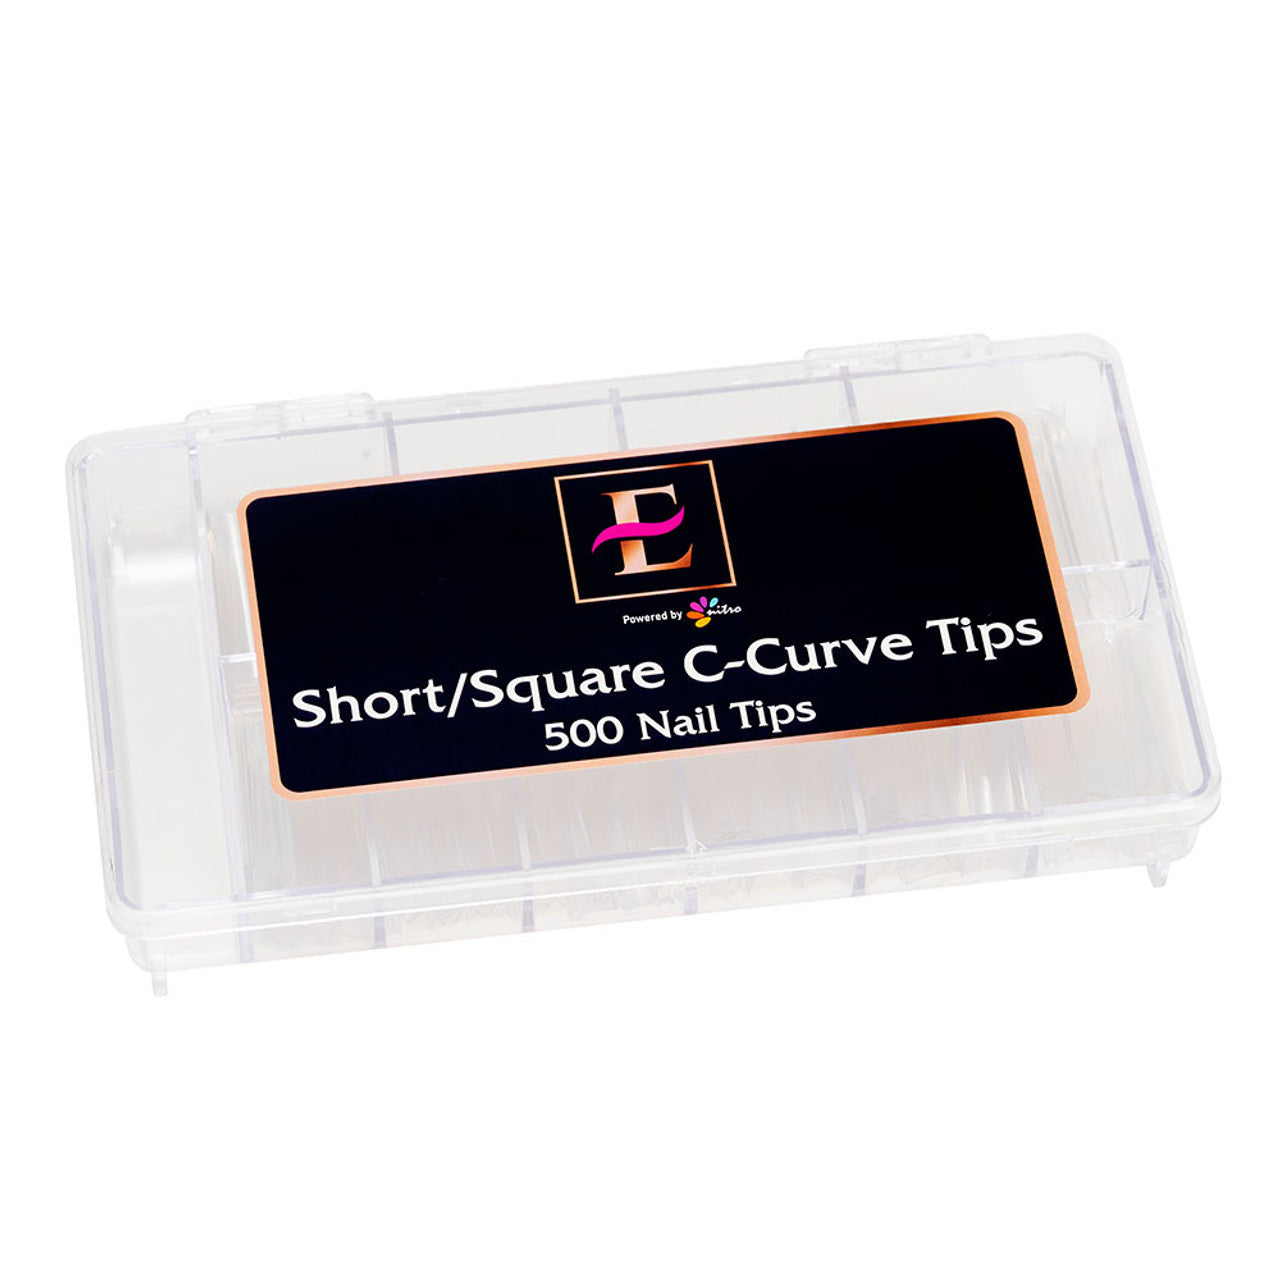 E Short/Square C-Curve Nail Tips (500 pcs)